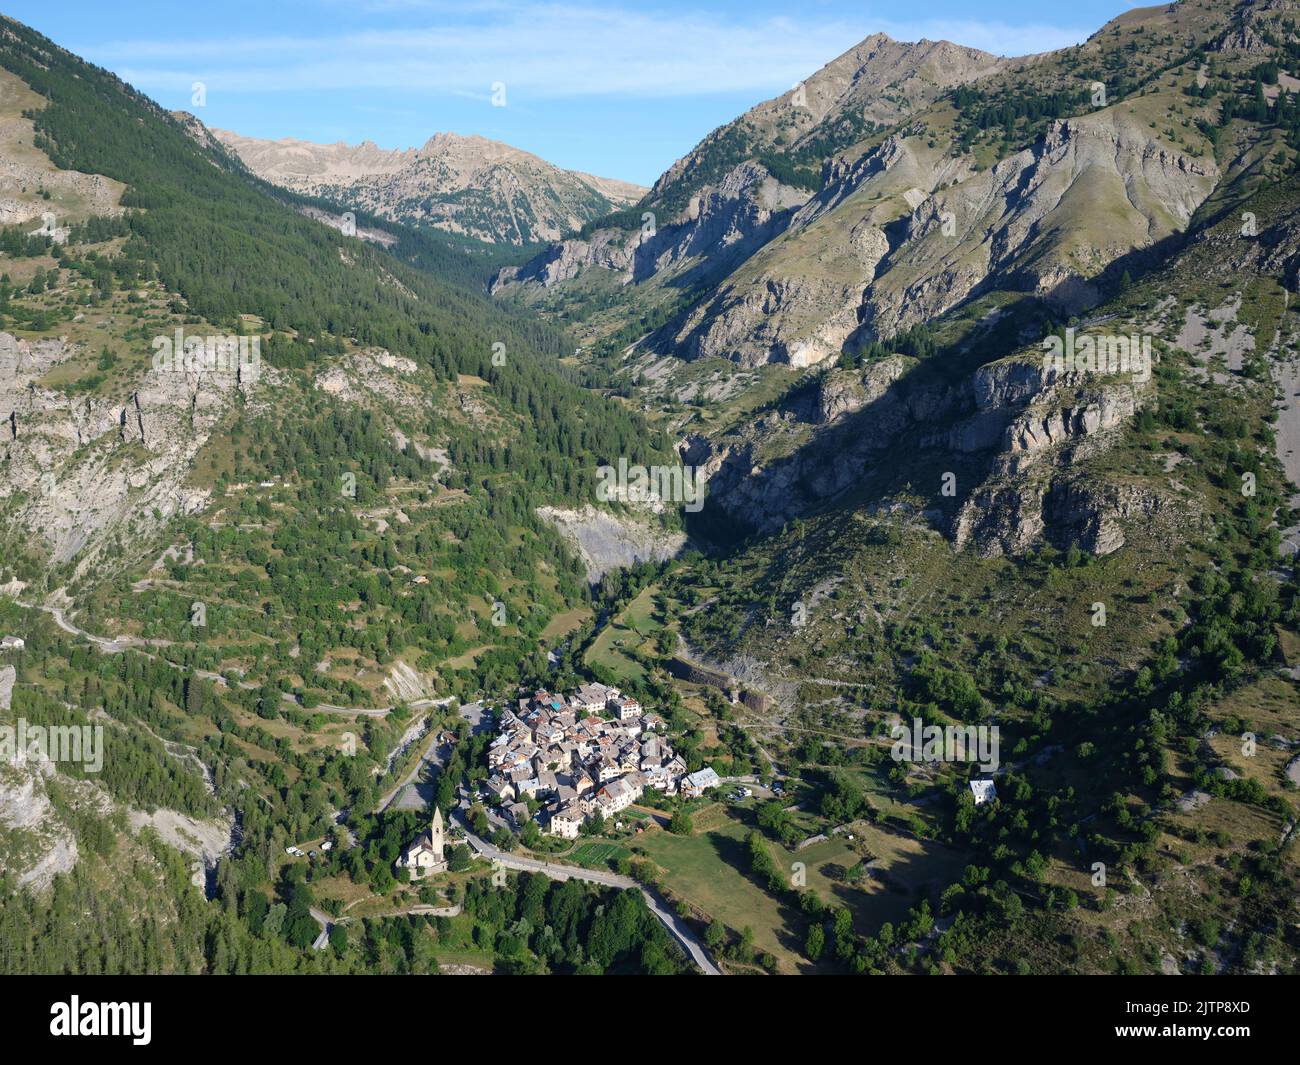 LUFTAUFNAHME. Kleines Dorf im Tinée-Tal am Fuße des Mercantour-Nationalparks. Alpes-Maritimes, Provence-Alpes-Côte d'Azur, Frankreich. Stockfoto